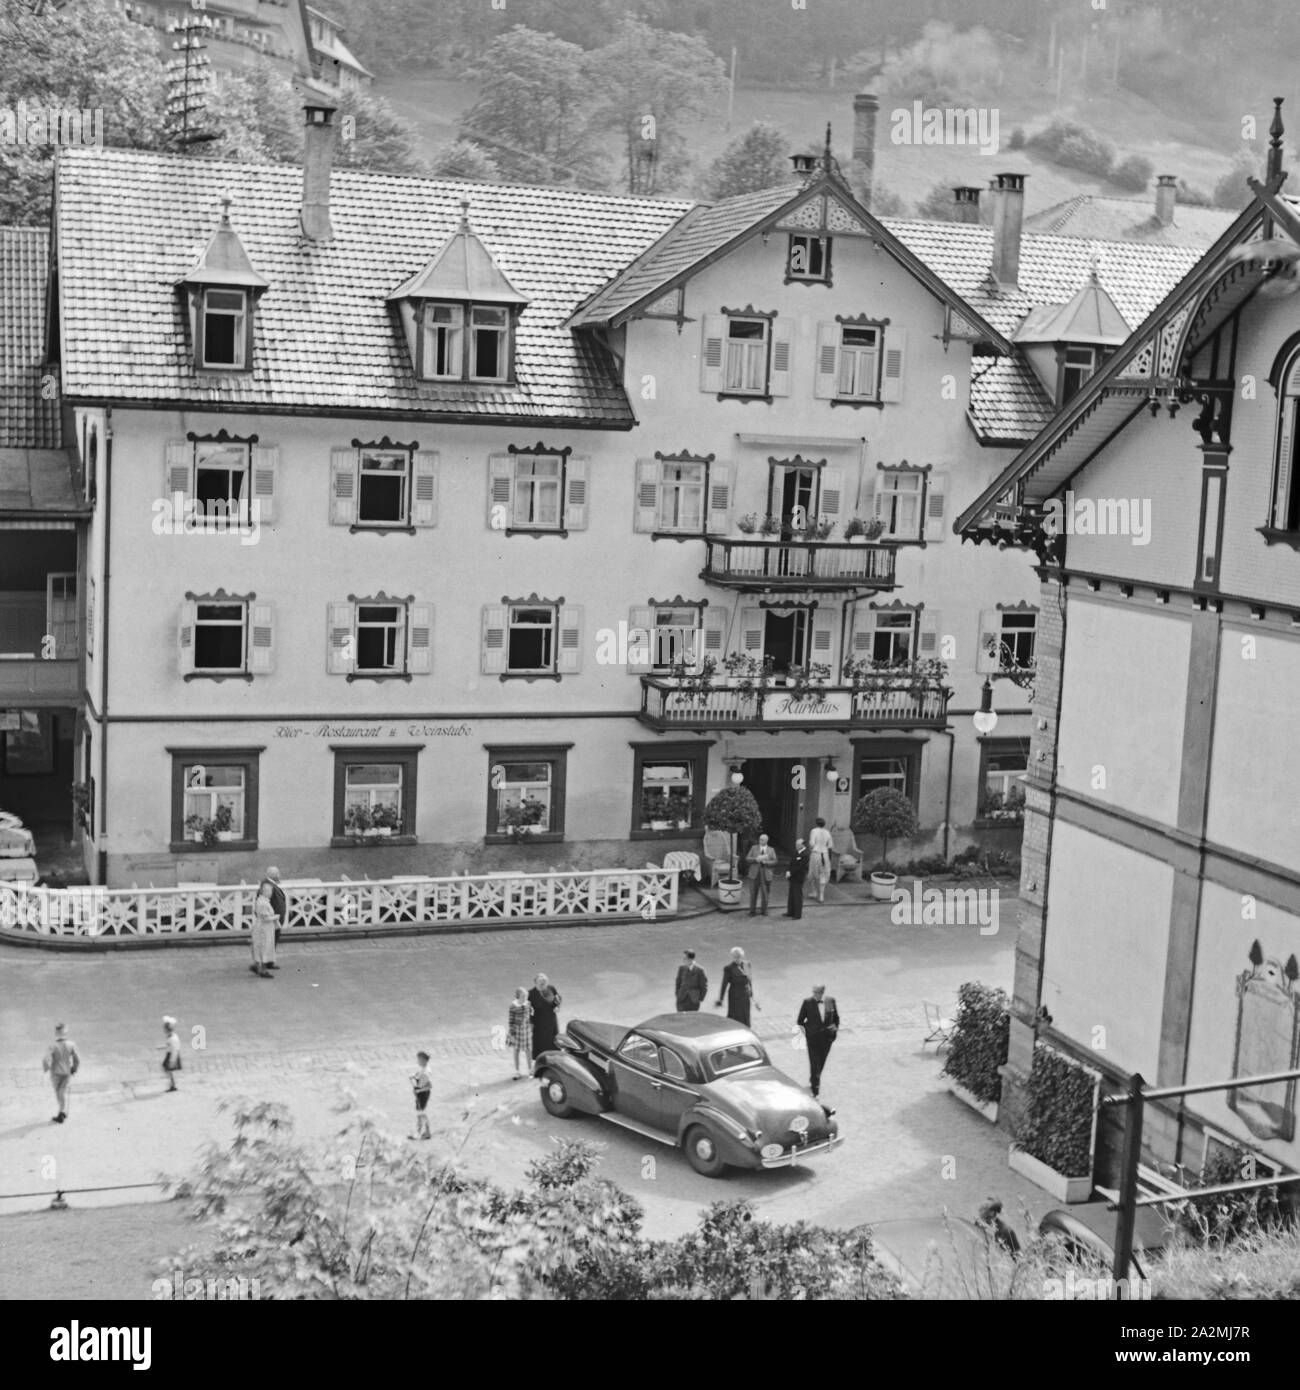 Kurhaus mit angeschlossenem Restaurant in einem Kurort im Schwarzwald, Deutschland 1930er Jahre. Spa Resort mit Restaurant im Schwarzwald, Deutschland der 1930er Jahre. Stockfoto